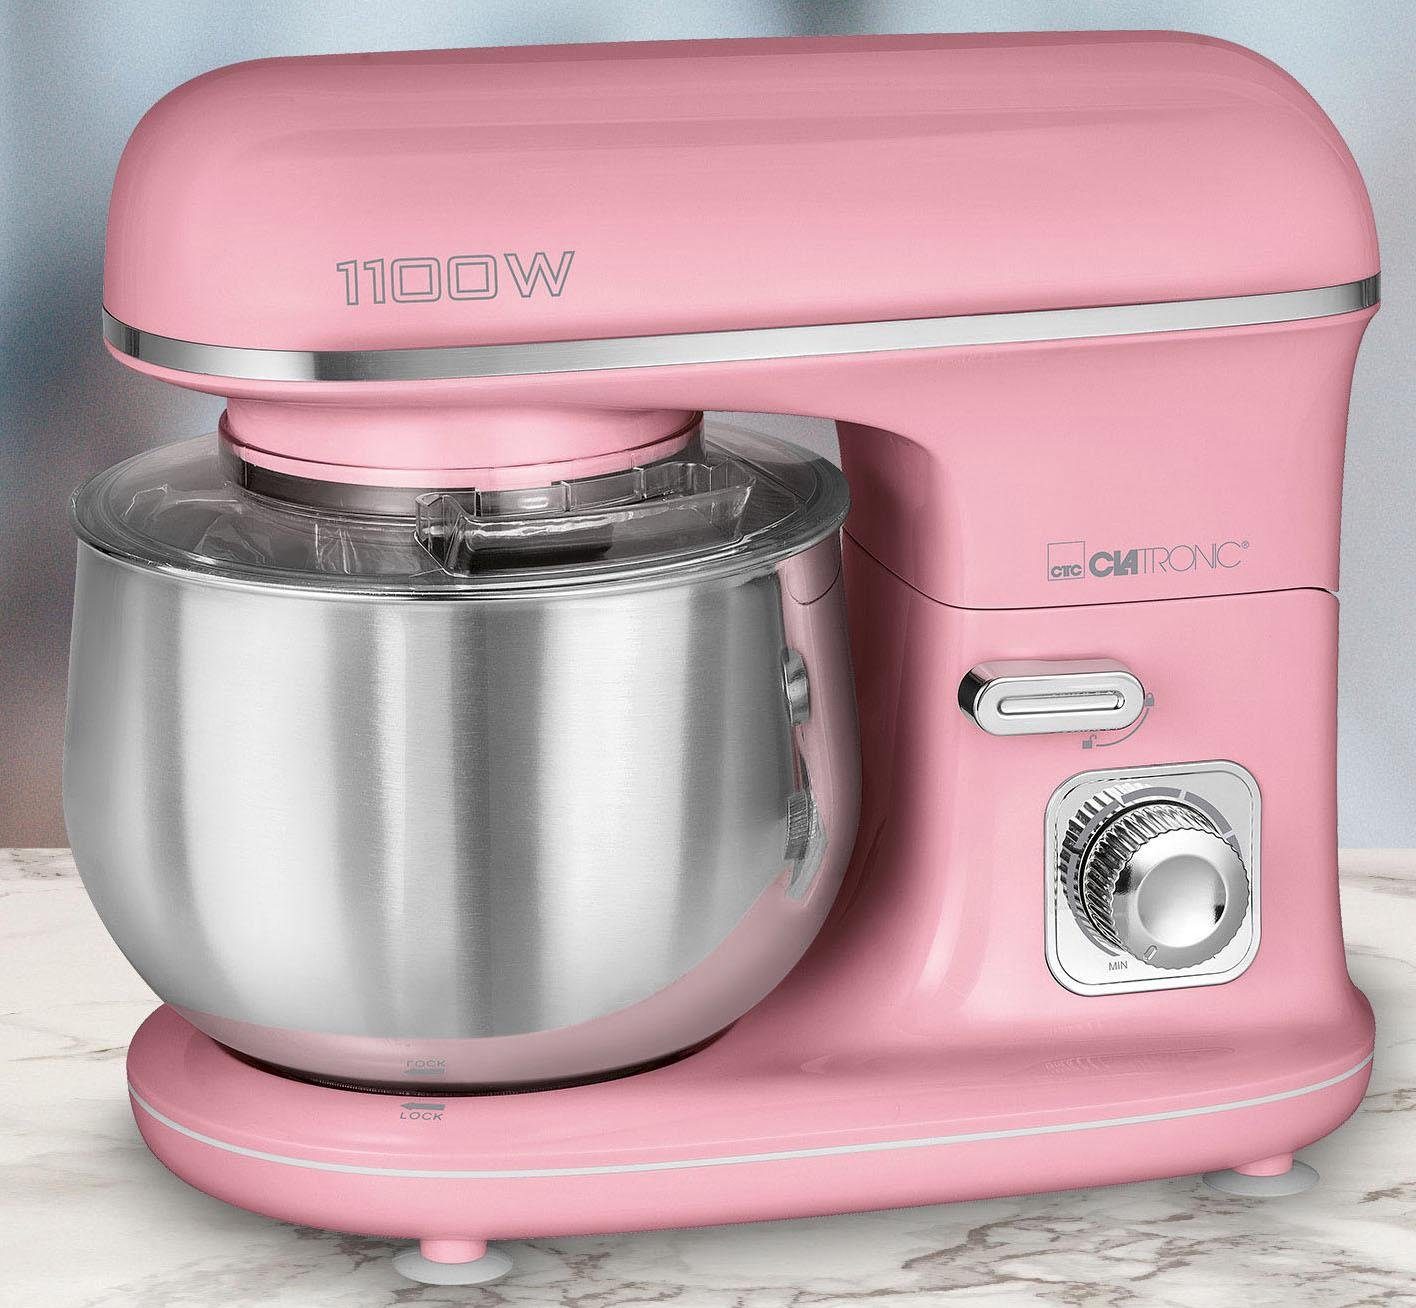 CLATRONIC Küchenmaschine KM 3711 pink, 1100 W, 5 l Schüssel,  Alu-Druckguss-Rührhaken – gleichmäßiges Verrühren auch größerer Mengen Teig